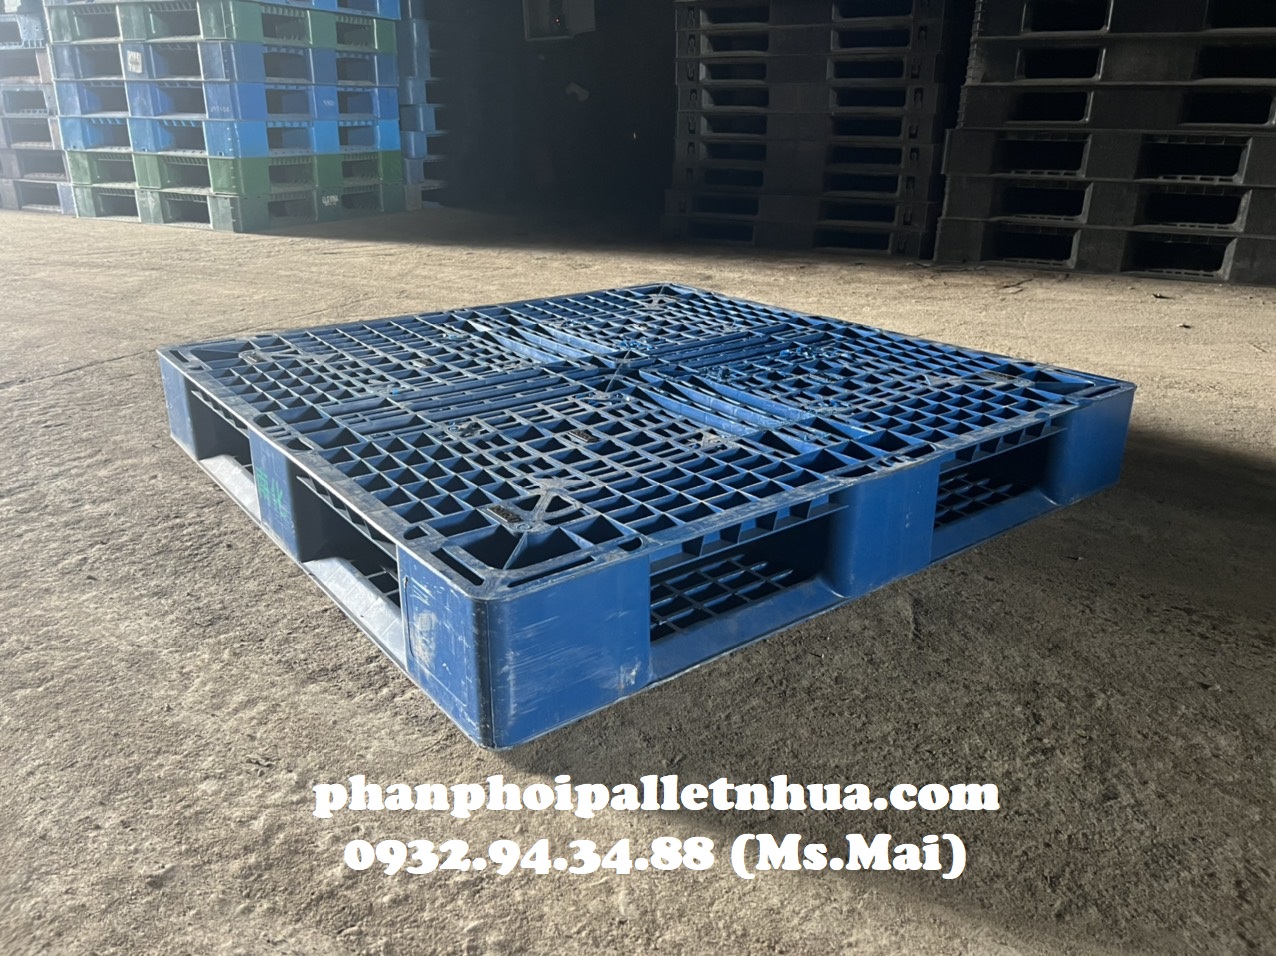 Phân phối pallet nhựa cũ tại An Giang, liên hệ 0932943488 (24/7)